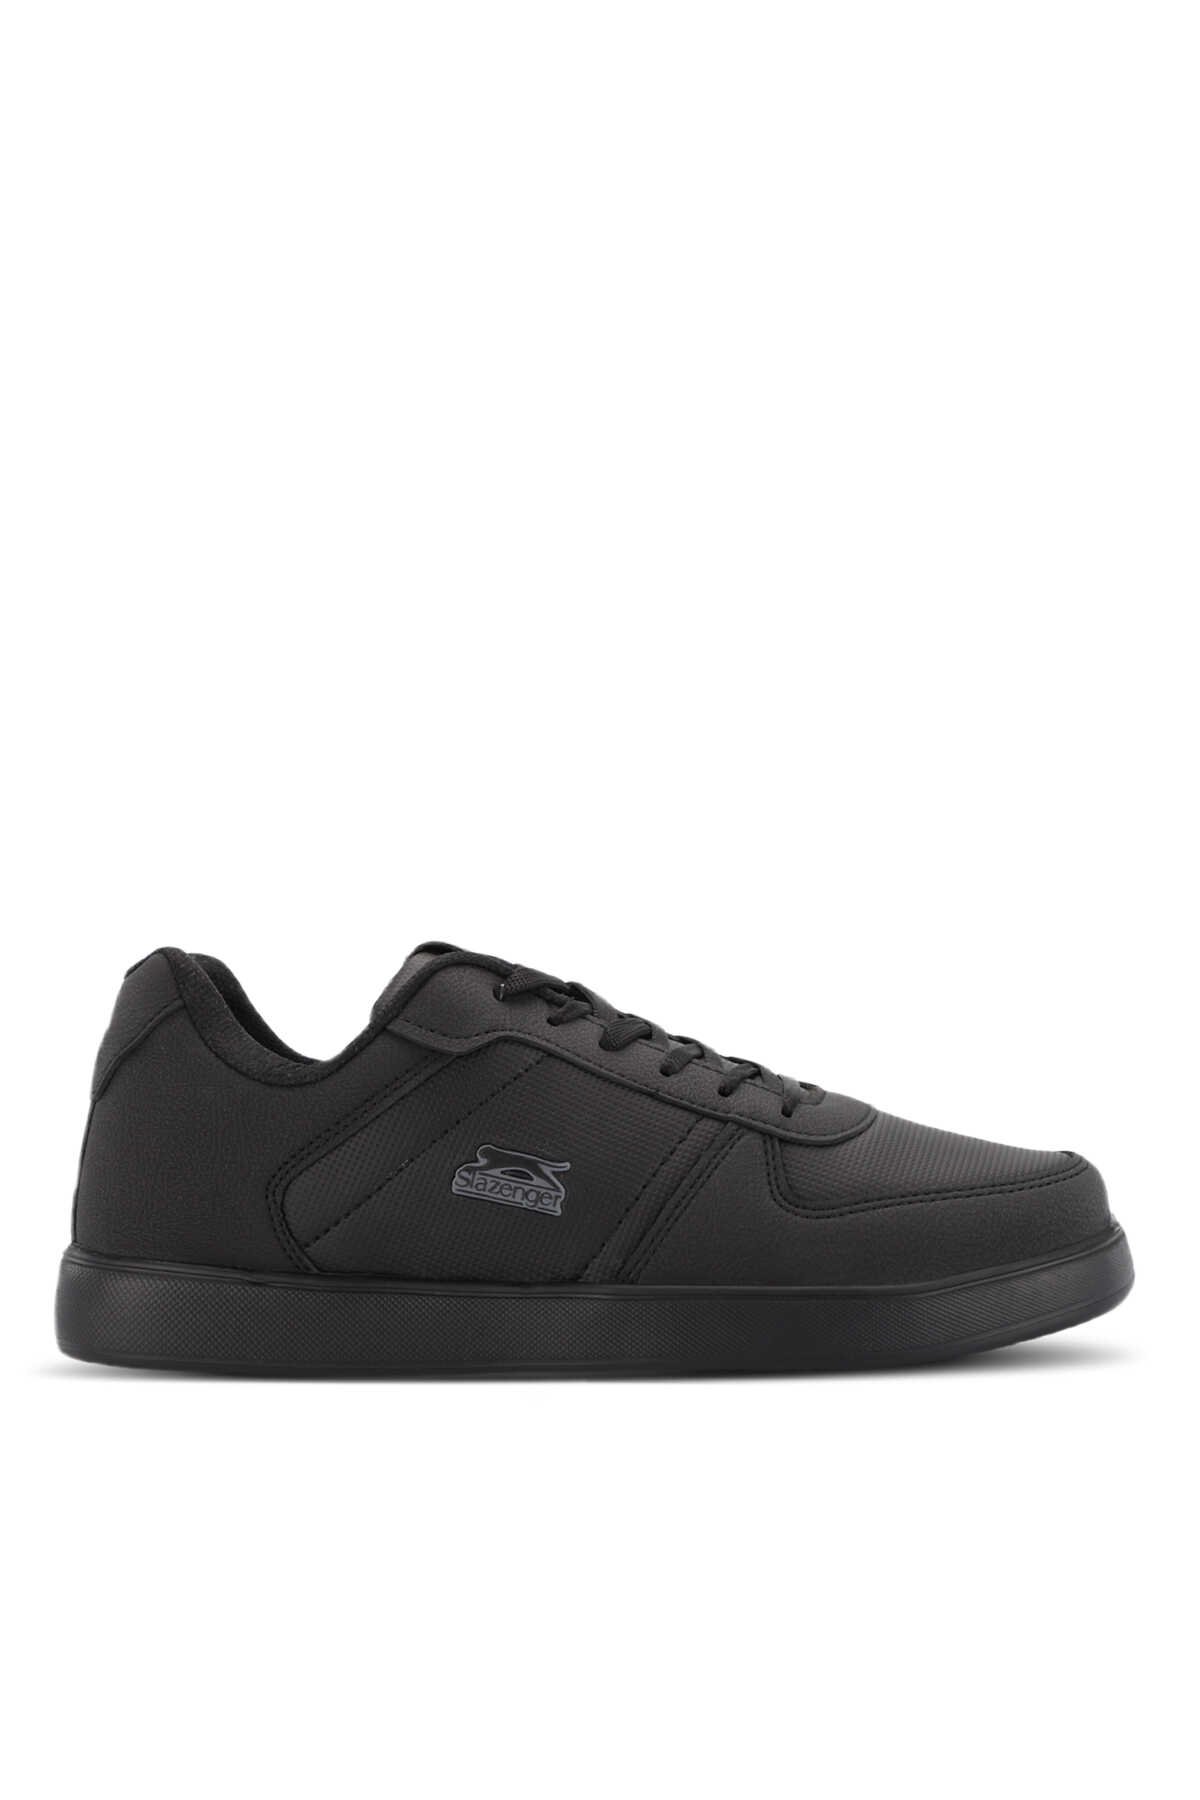 Slazenger - Slazenger POINT NEW I Sneaker Erkek Ayakkabı Siyah Nubuk